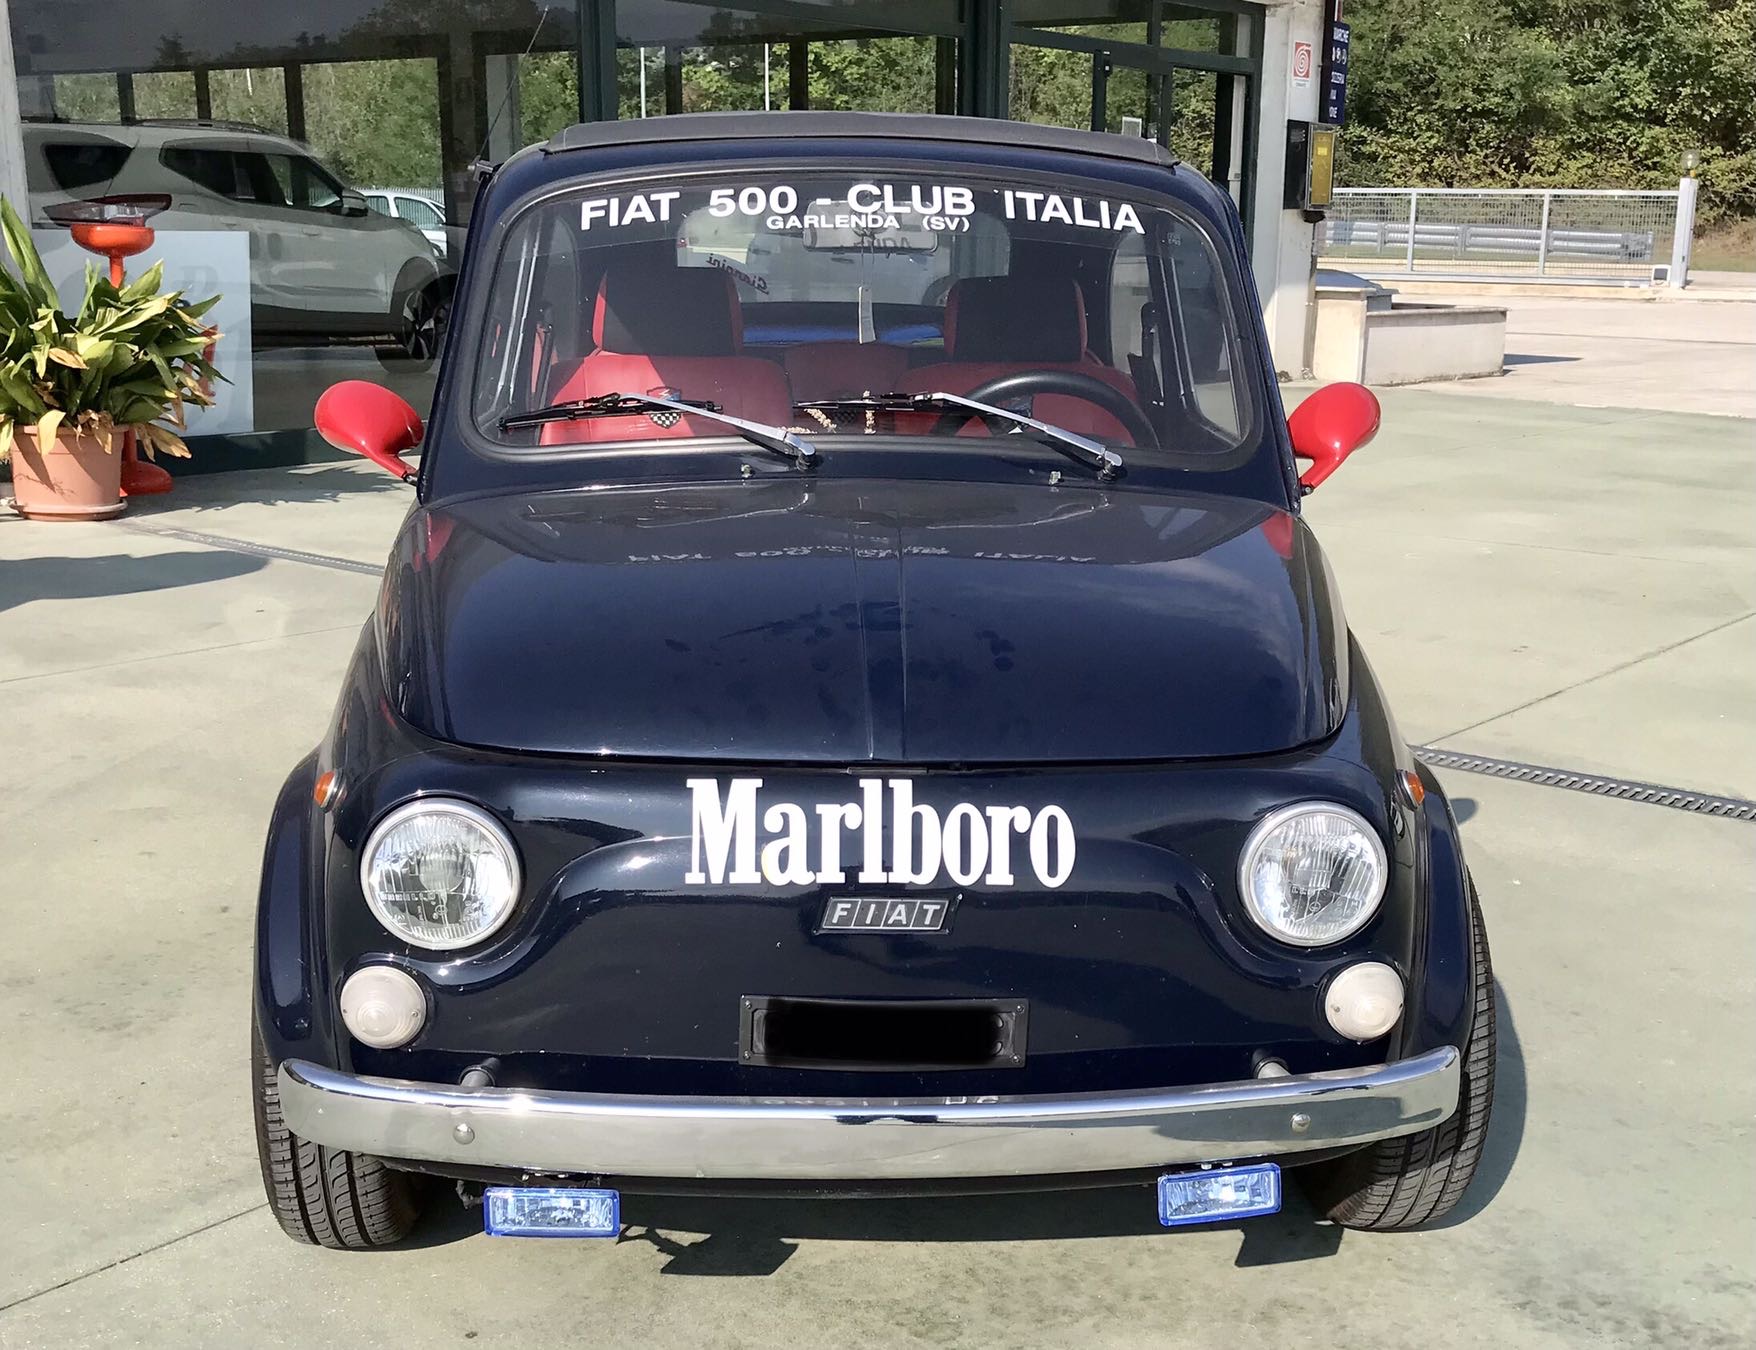 FIAT 500 F - 1965 - auto Epoca interesse storico - Auto nuove ed usate a  San Severino Marche, Macerata, Tolentino, Civitanova